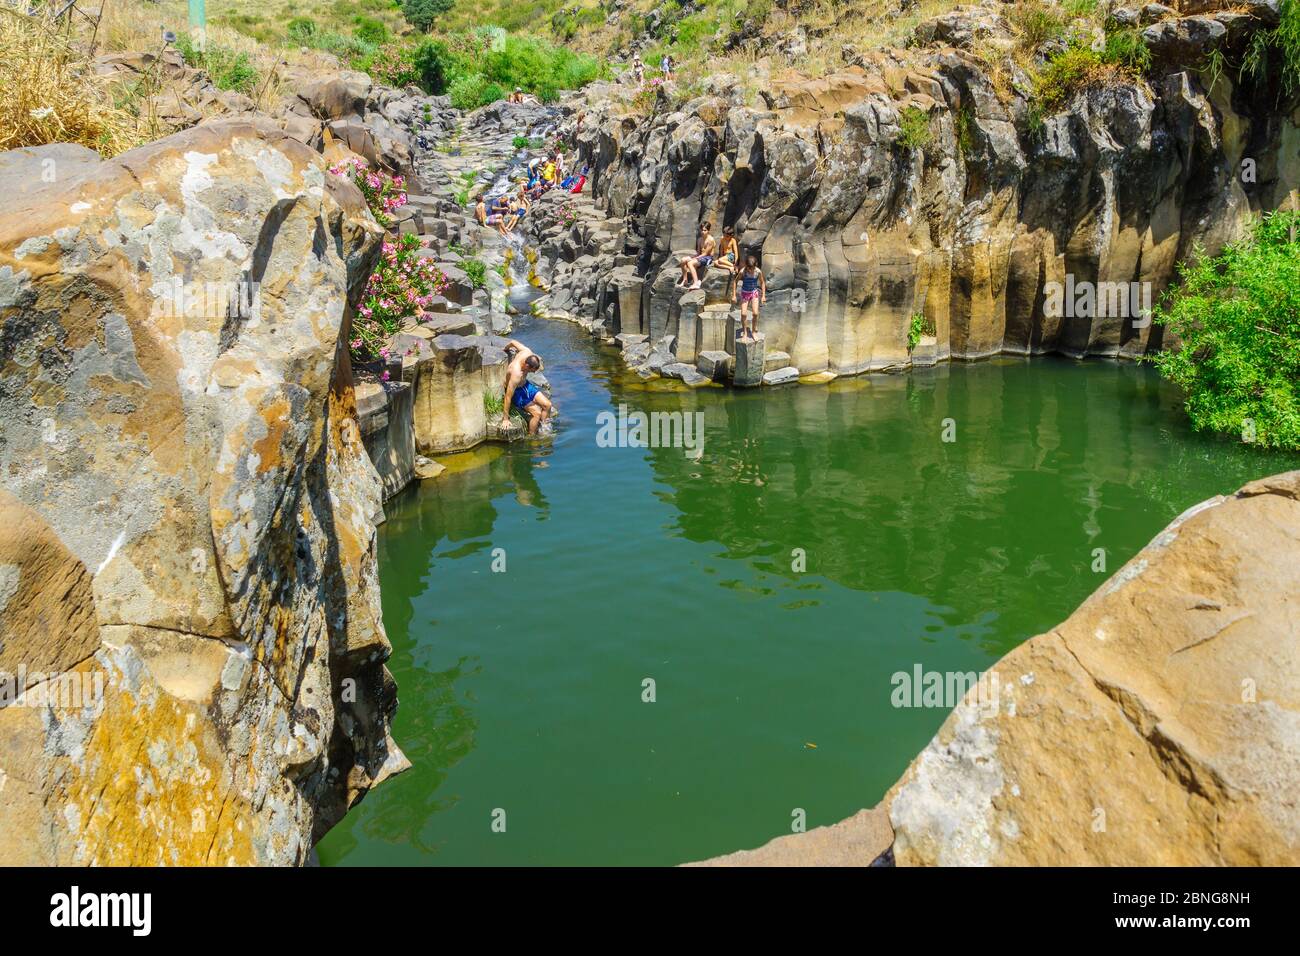 Qatsrin, Israele - 12 maggio 2020: Vista della piscina Zavitan con colonne esagonali, con i visitatori che fanno il bagno, nella Riserva Naturale della Foresta di Yehudiya, l'altezza del Golan Foto Stock